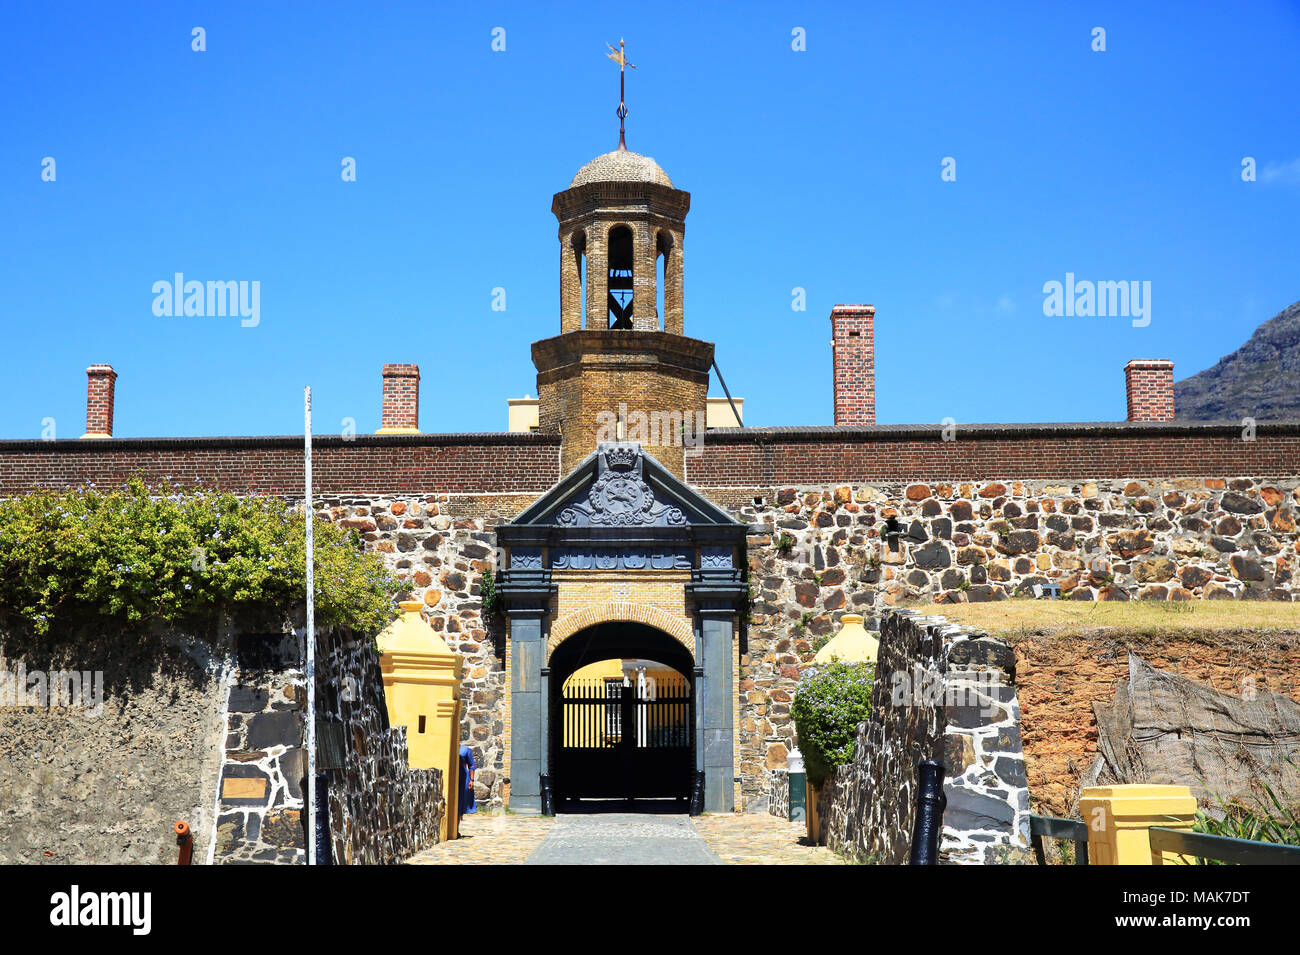 Entrée au château de Bonne Espérance, un bastion fort, construit par la Dutch East India Company entre 1666 et 1679, à Cape Town, Afrique du Sud Banque D'Images